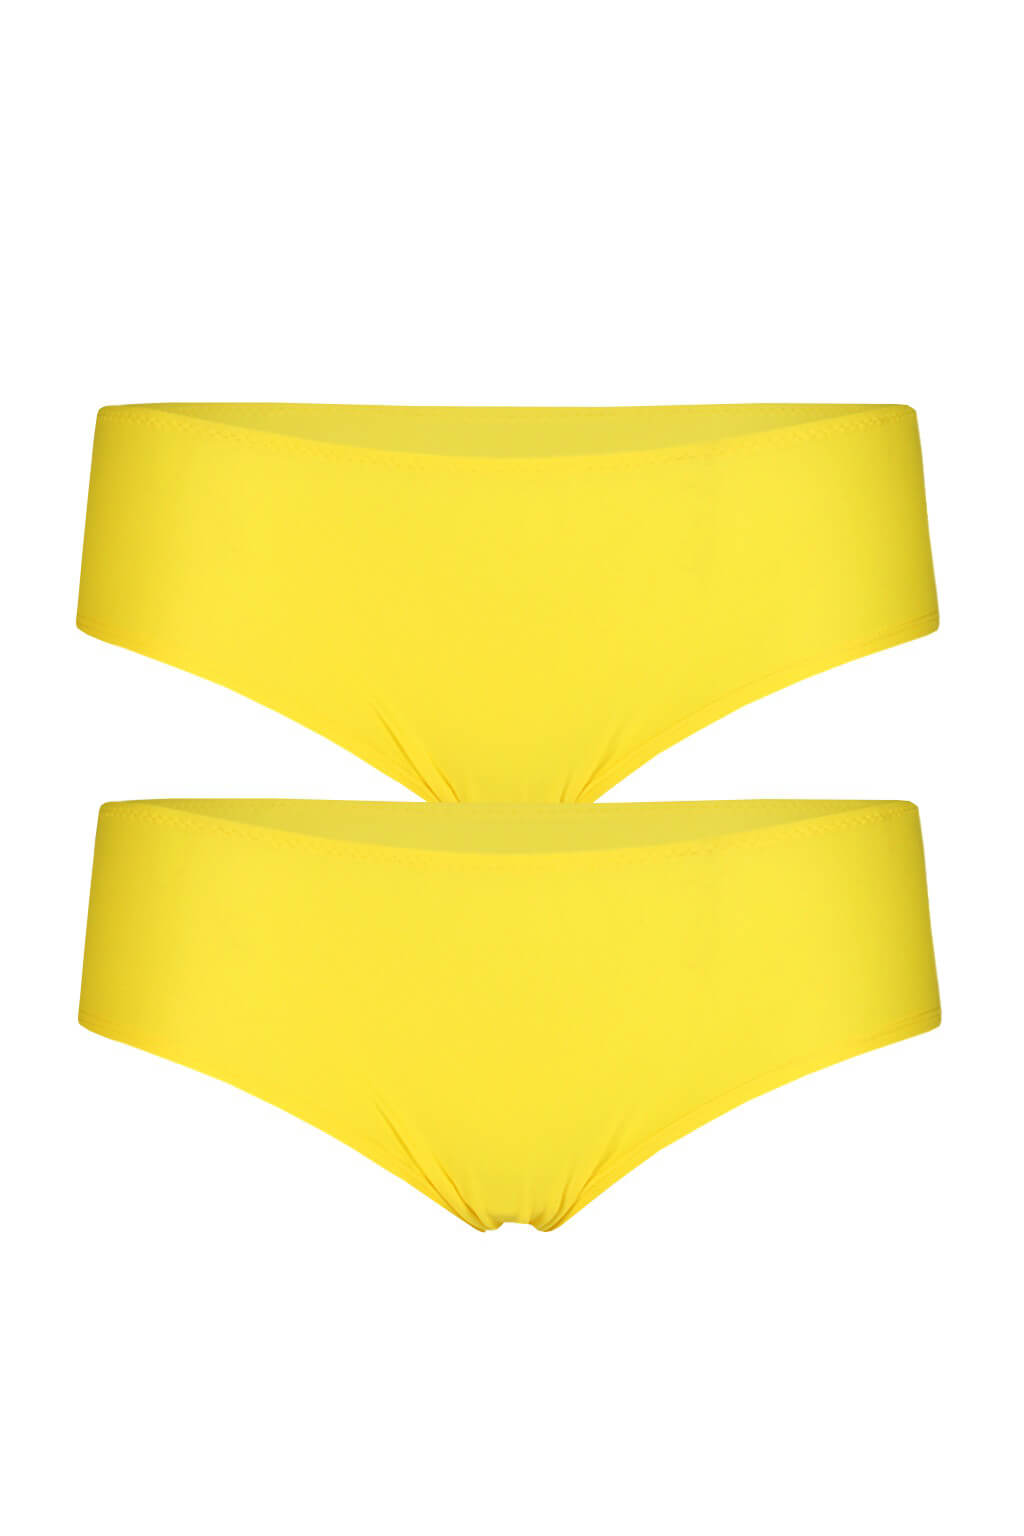 Bellinda dámské boxerky Micro Culotte - 2ks M žlutá